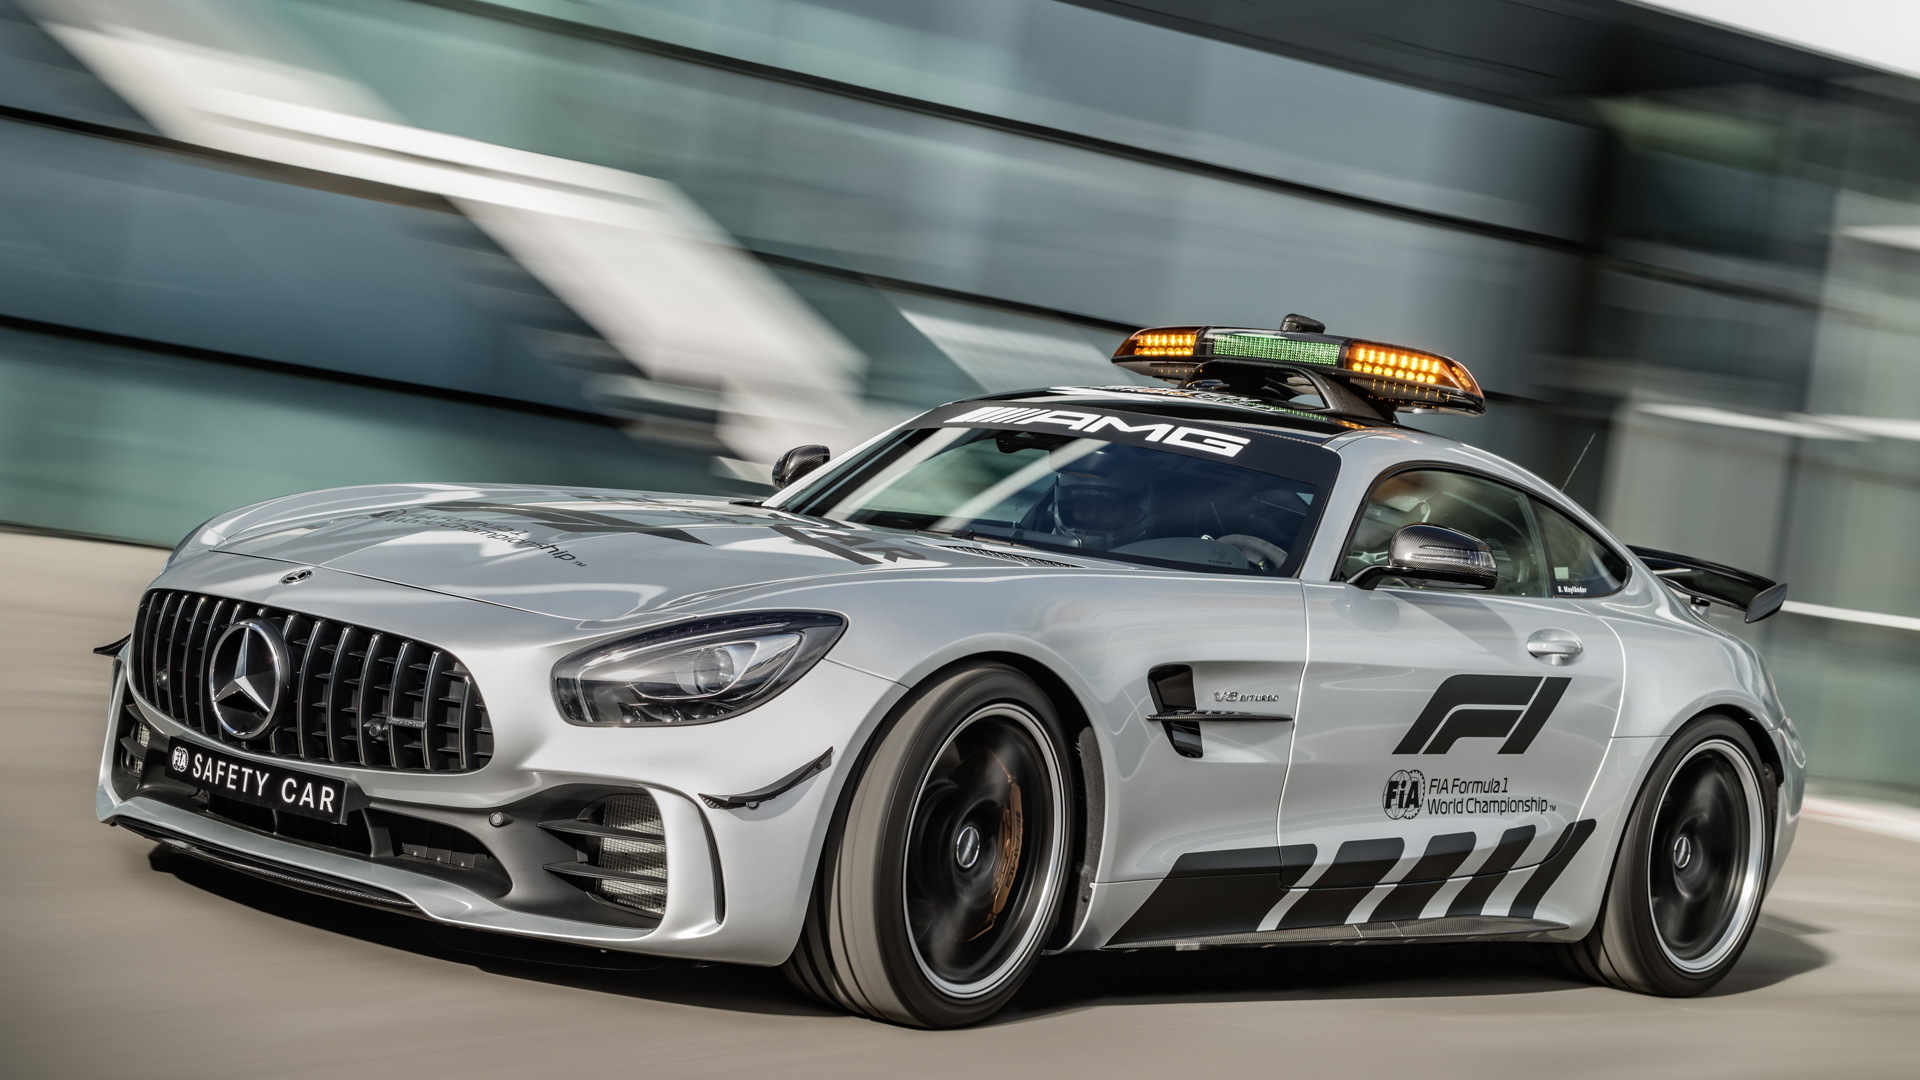 2018 Mercedes-AMG GT R Formula 1 safety car